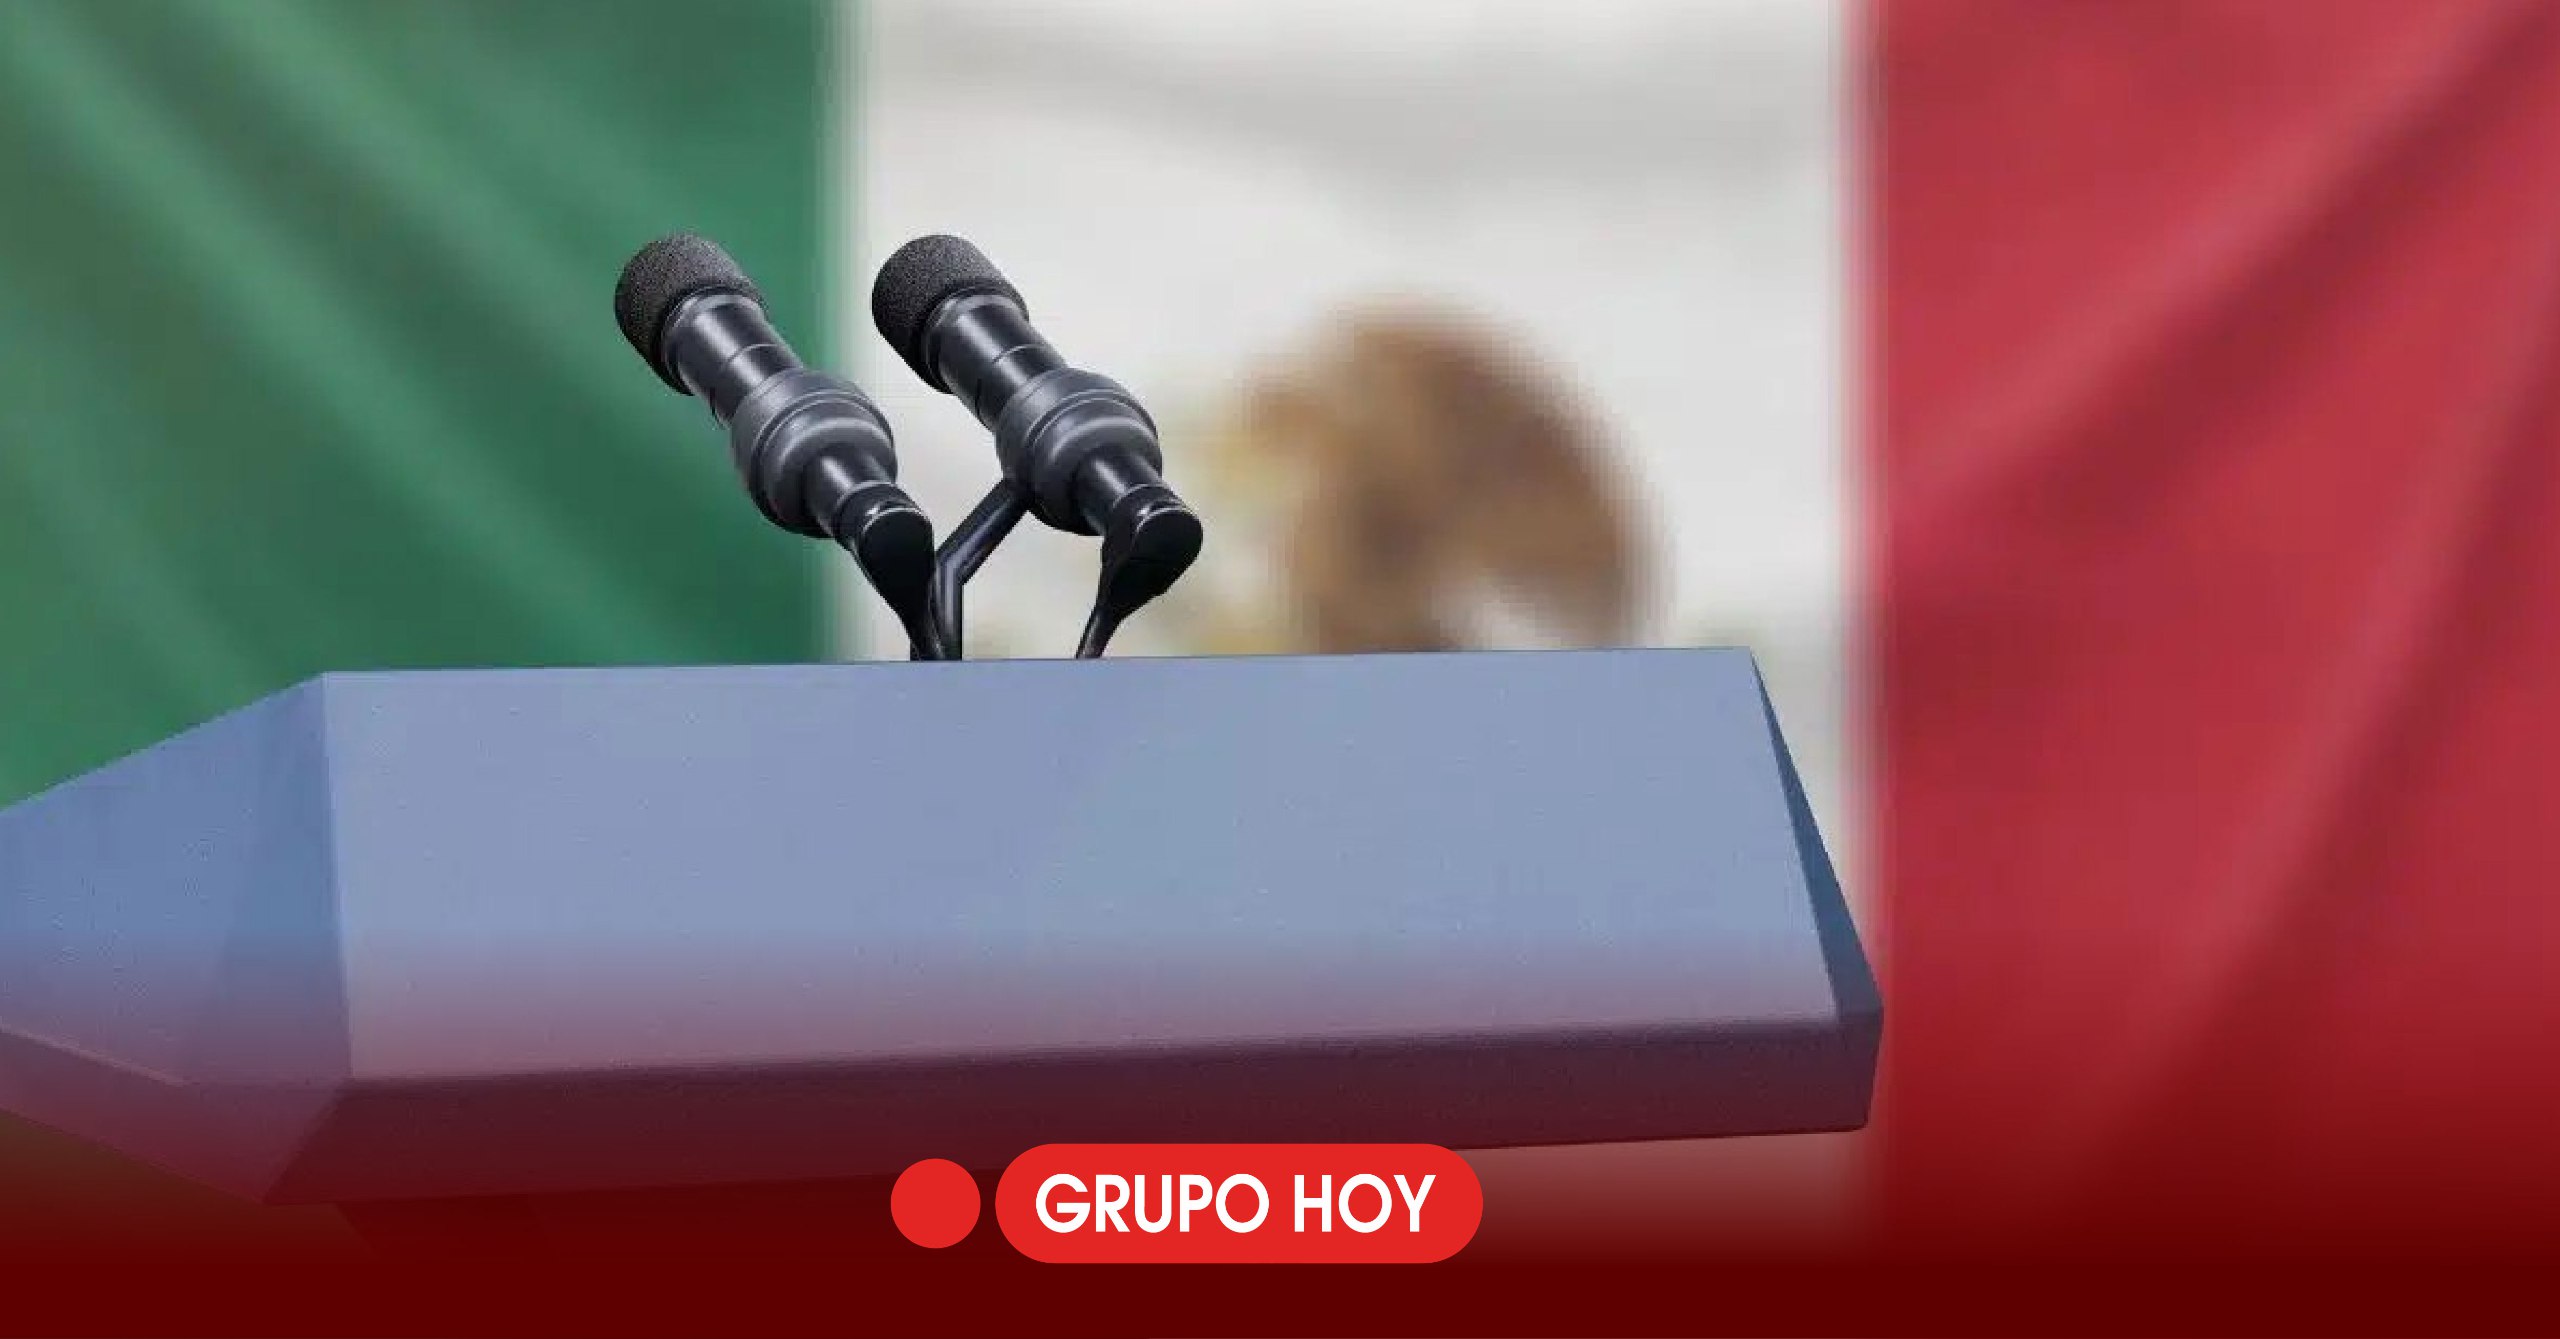 Impresionantes cifras de reproducciones en debates electorales de Hidalgo: más de 1.5 millones de vistas